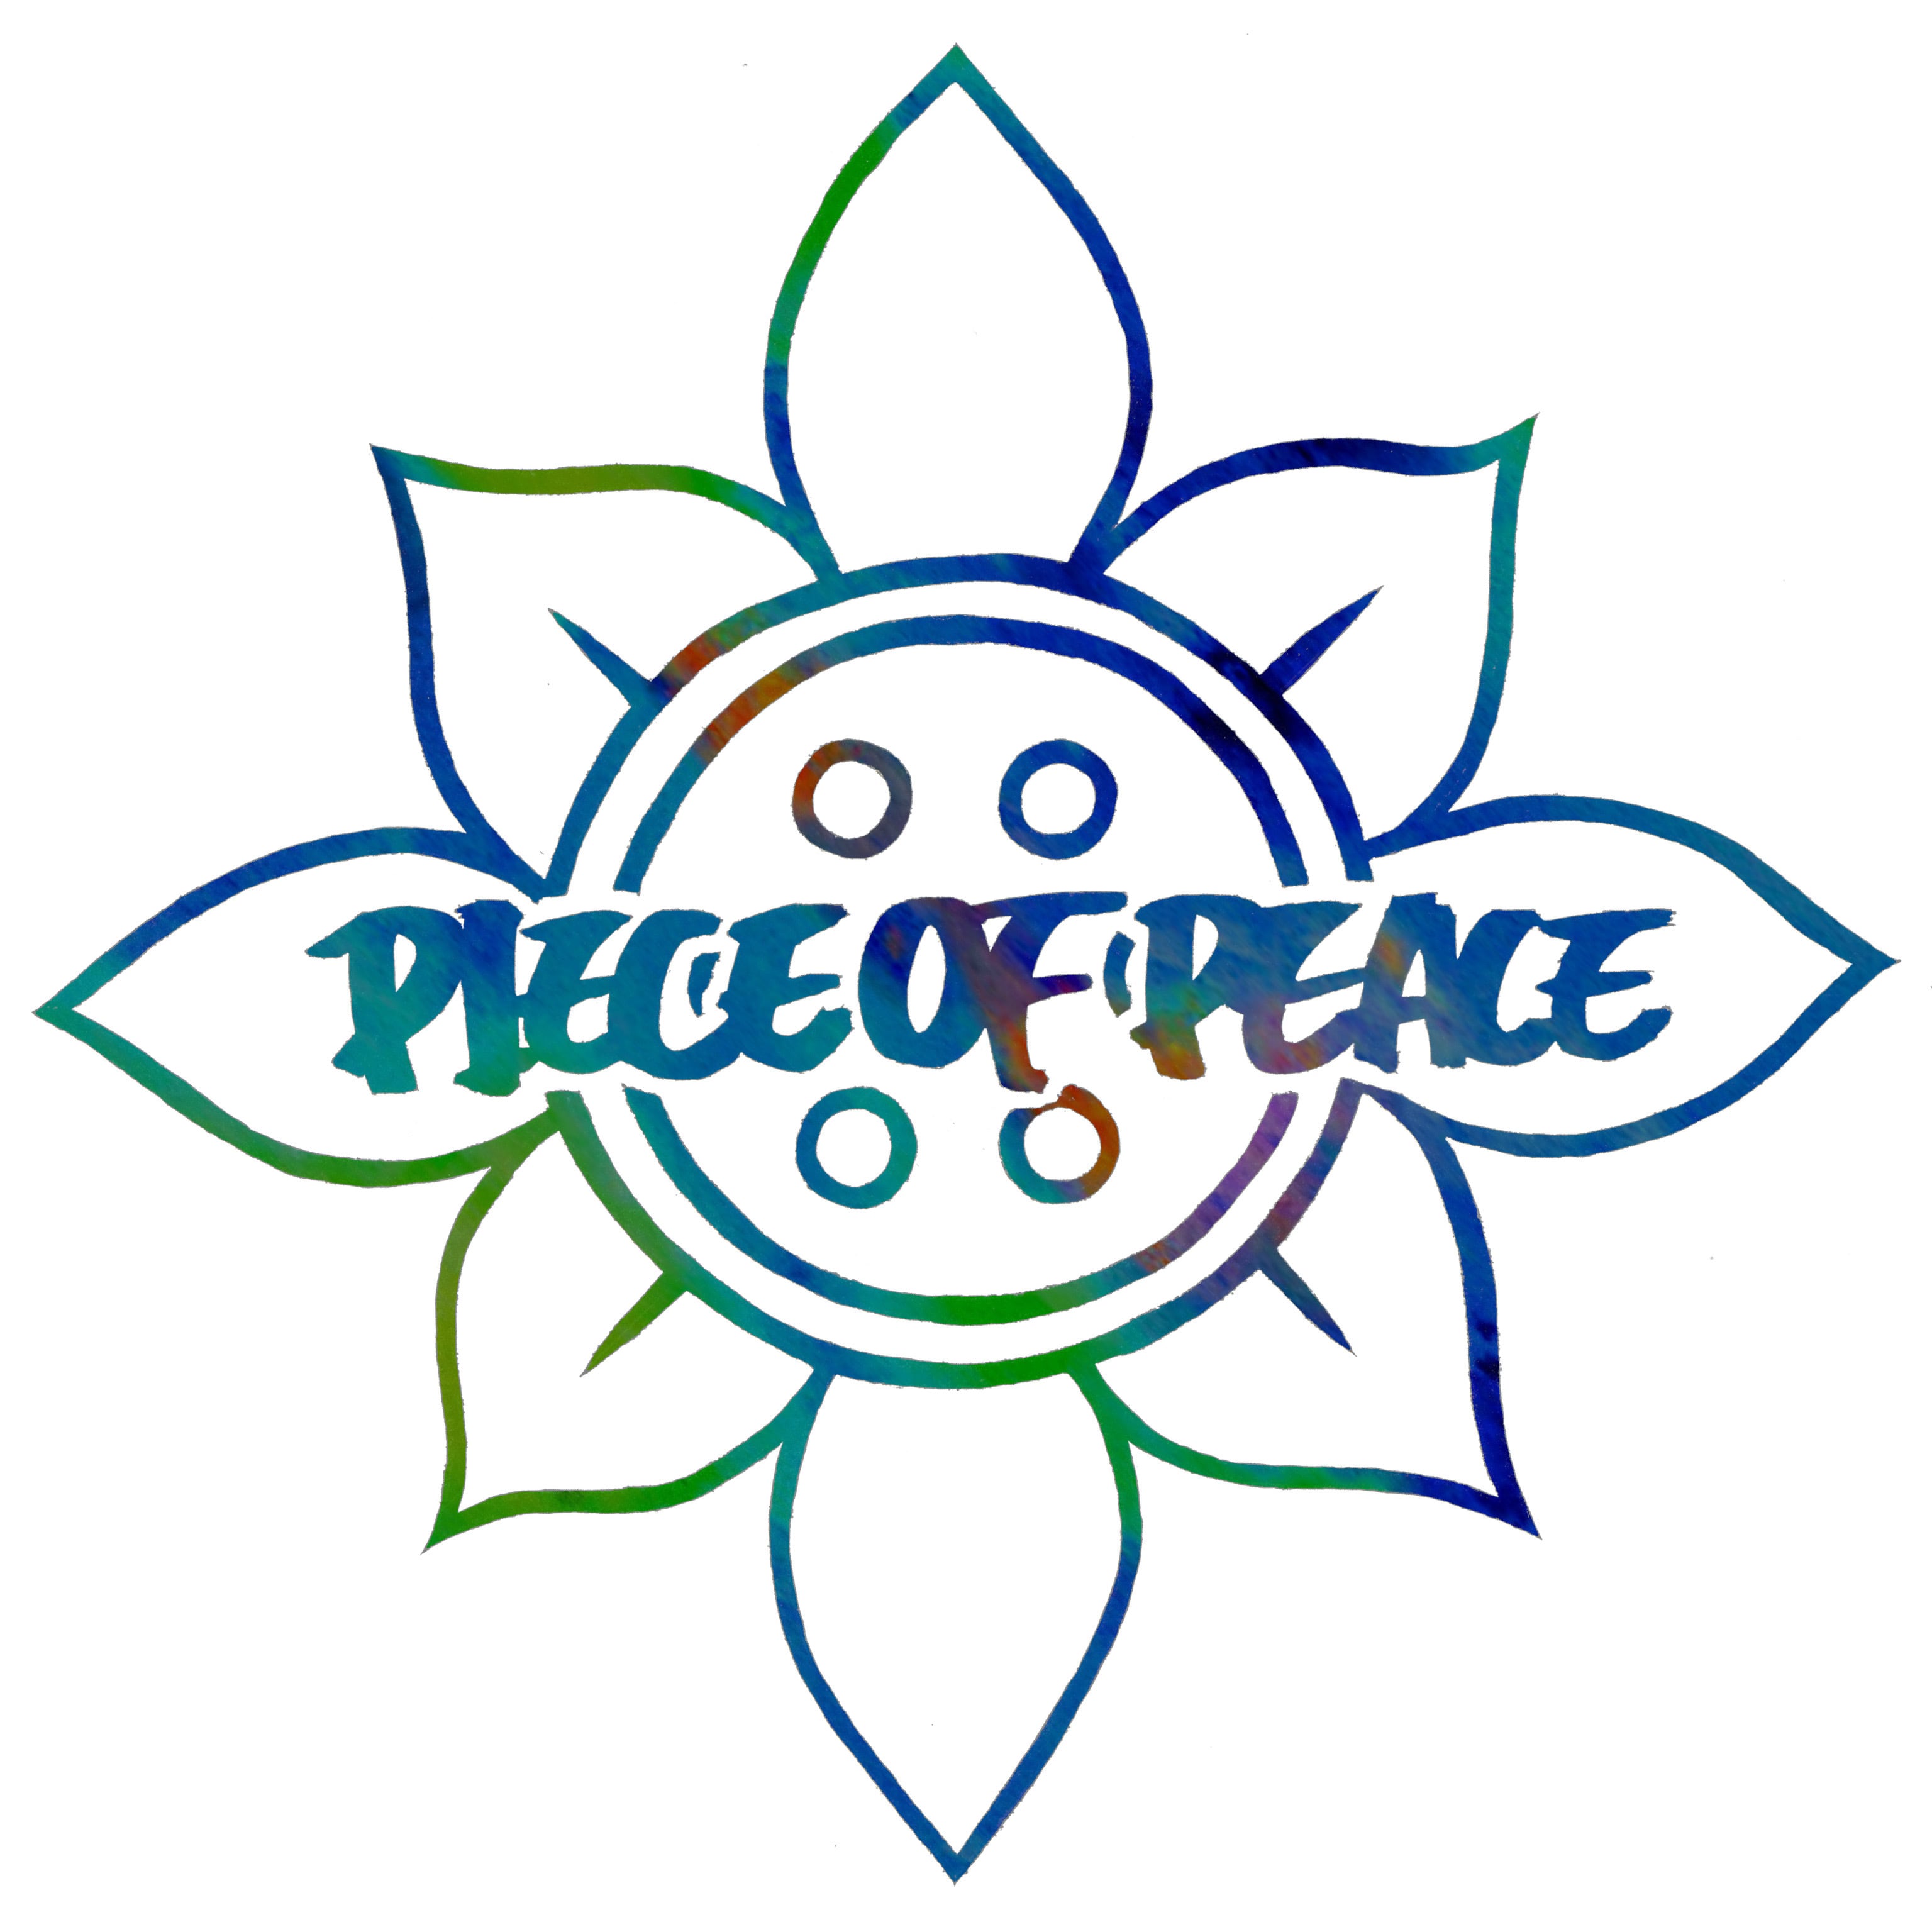 PIECE OF PEACE